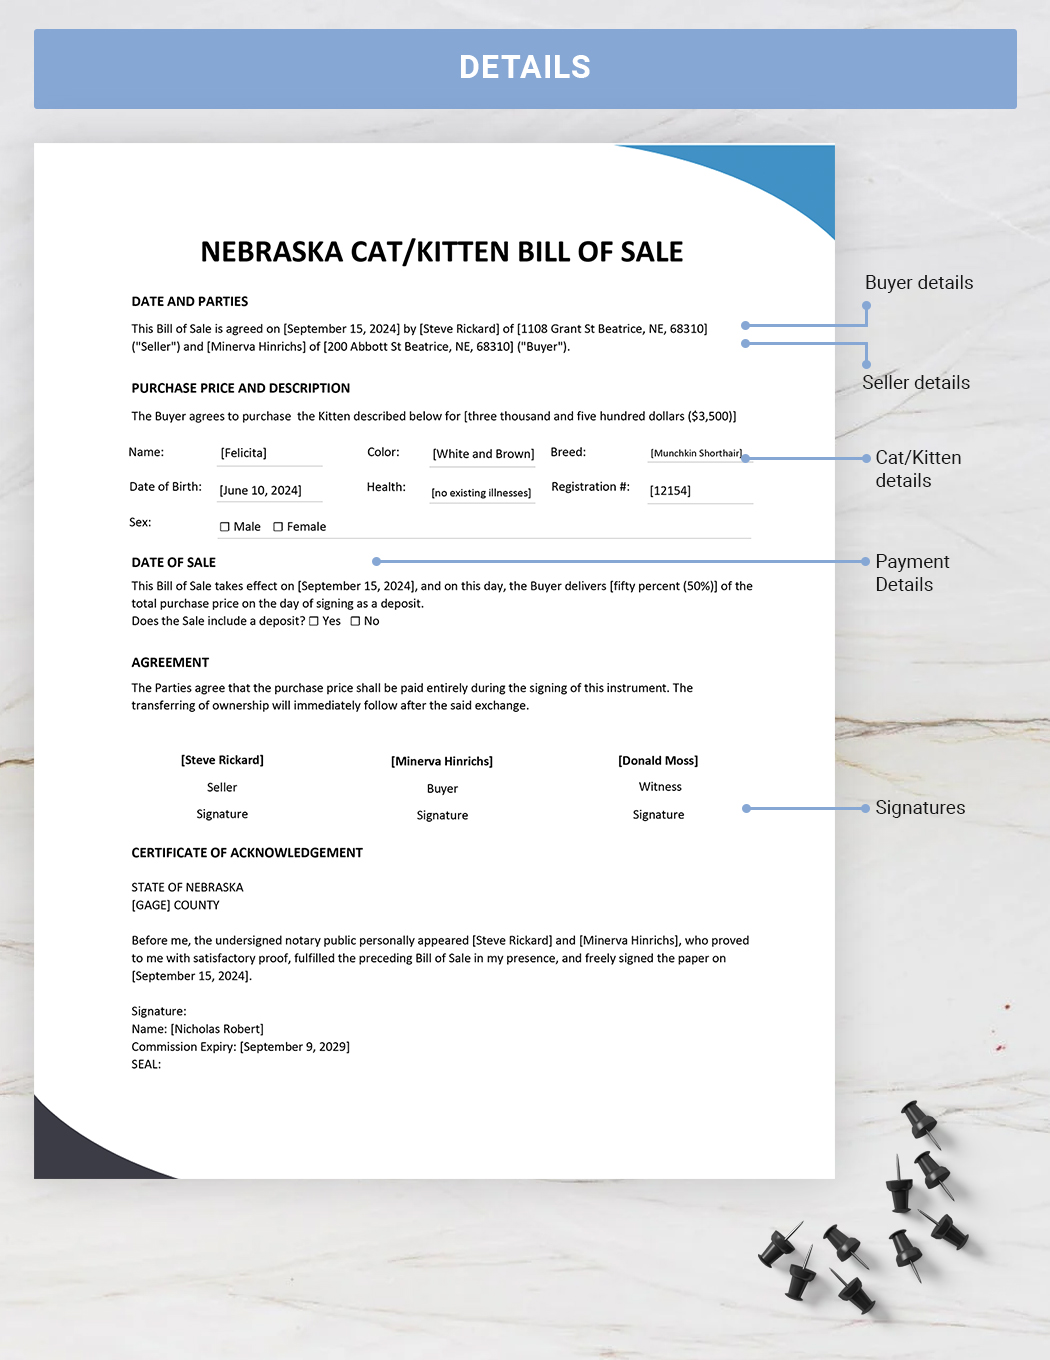 Nebraska Cat / Kitten Bill of Sale Template